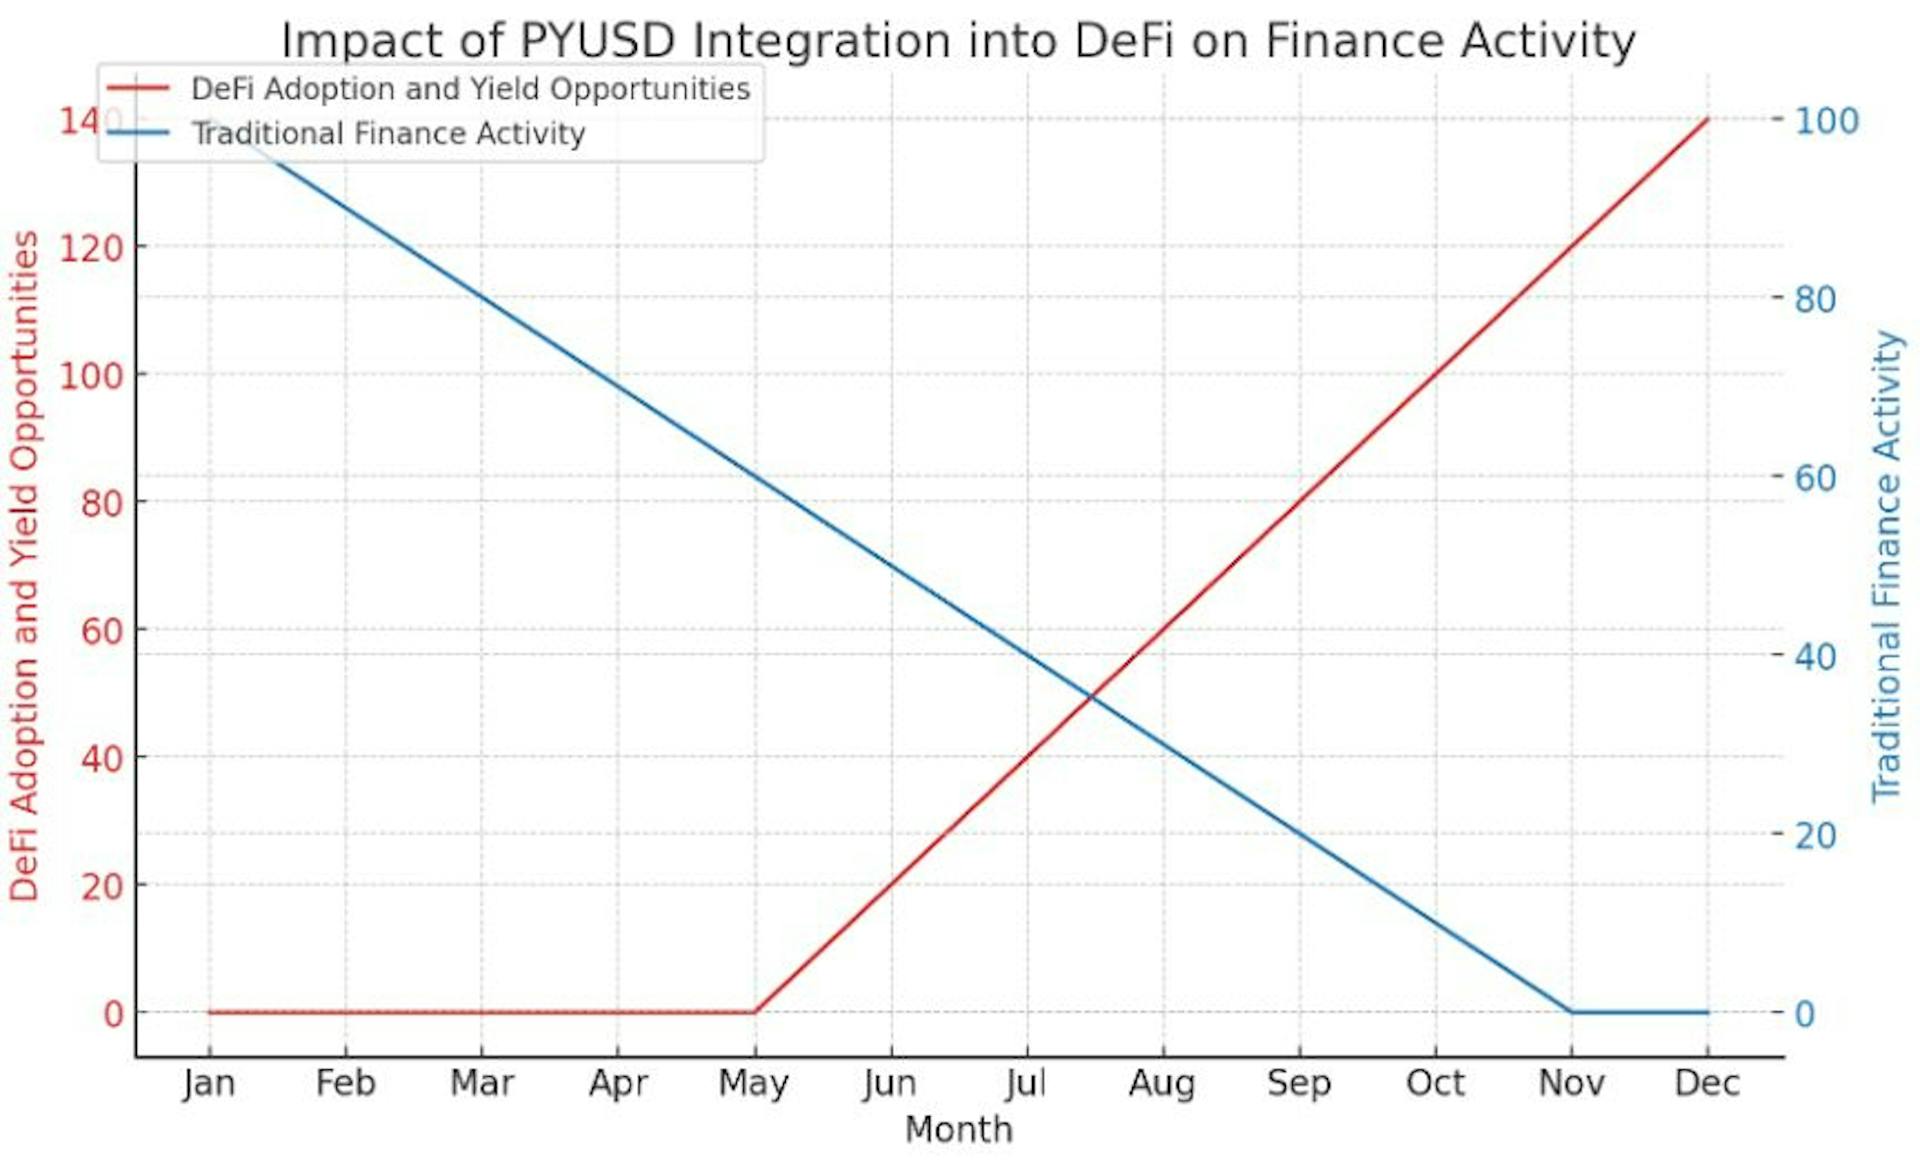 O gráfico visualiza o impacto hipotético da integração do PYUSD no ecossistema DeFi, mostrando um aumento significativo na adoção de DeFi e oportunidades de rendimento ao longo do tempo.